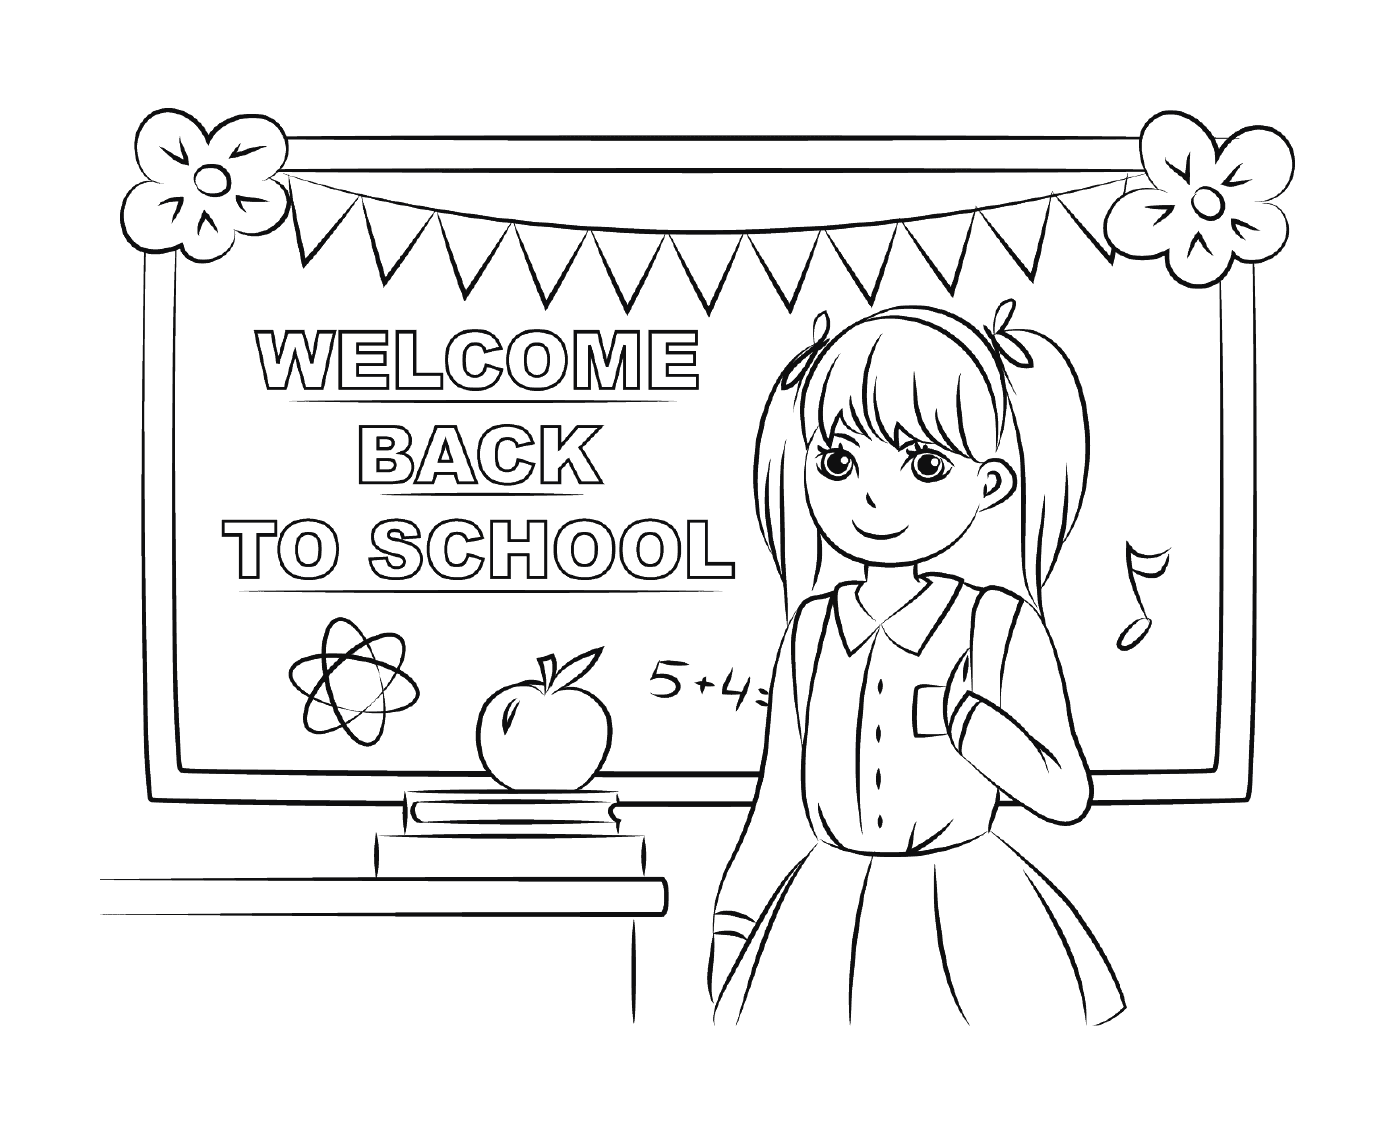  Добро пожаловать в школу 